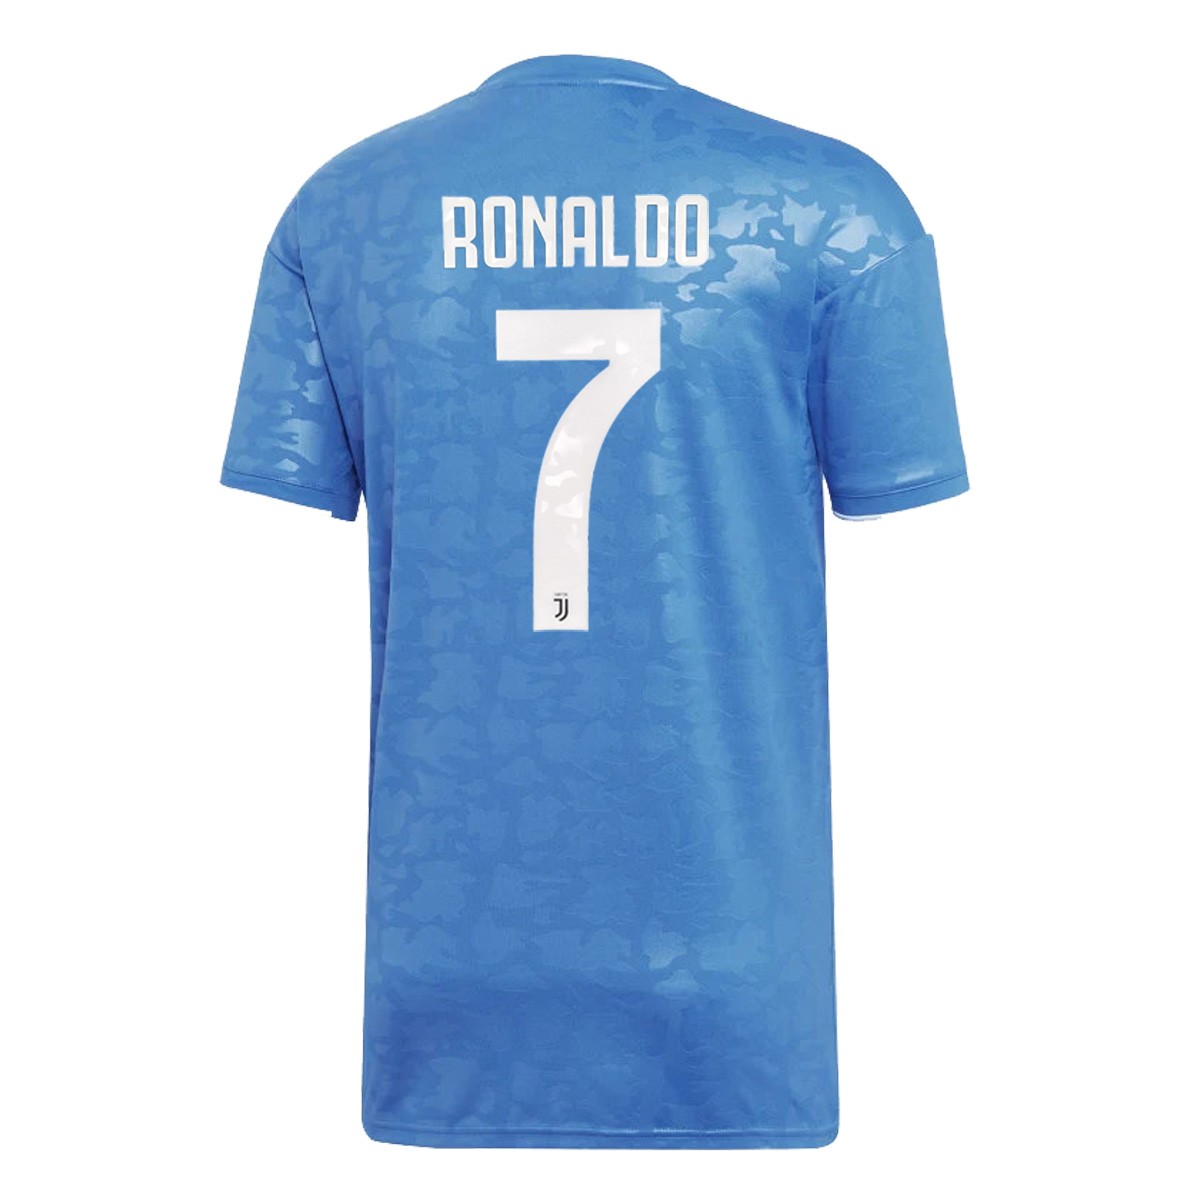 ronaldo in blue jersey